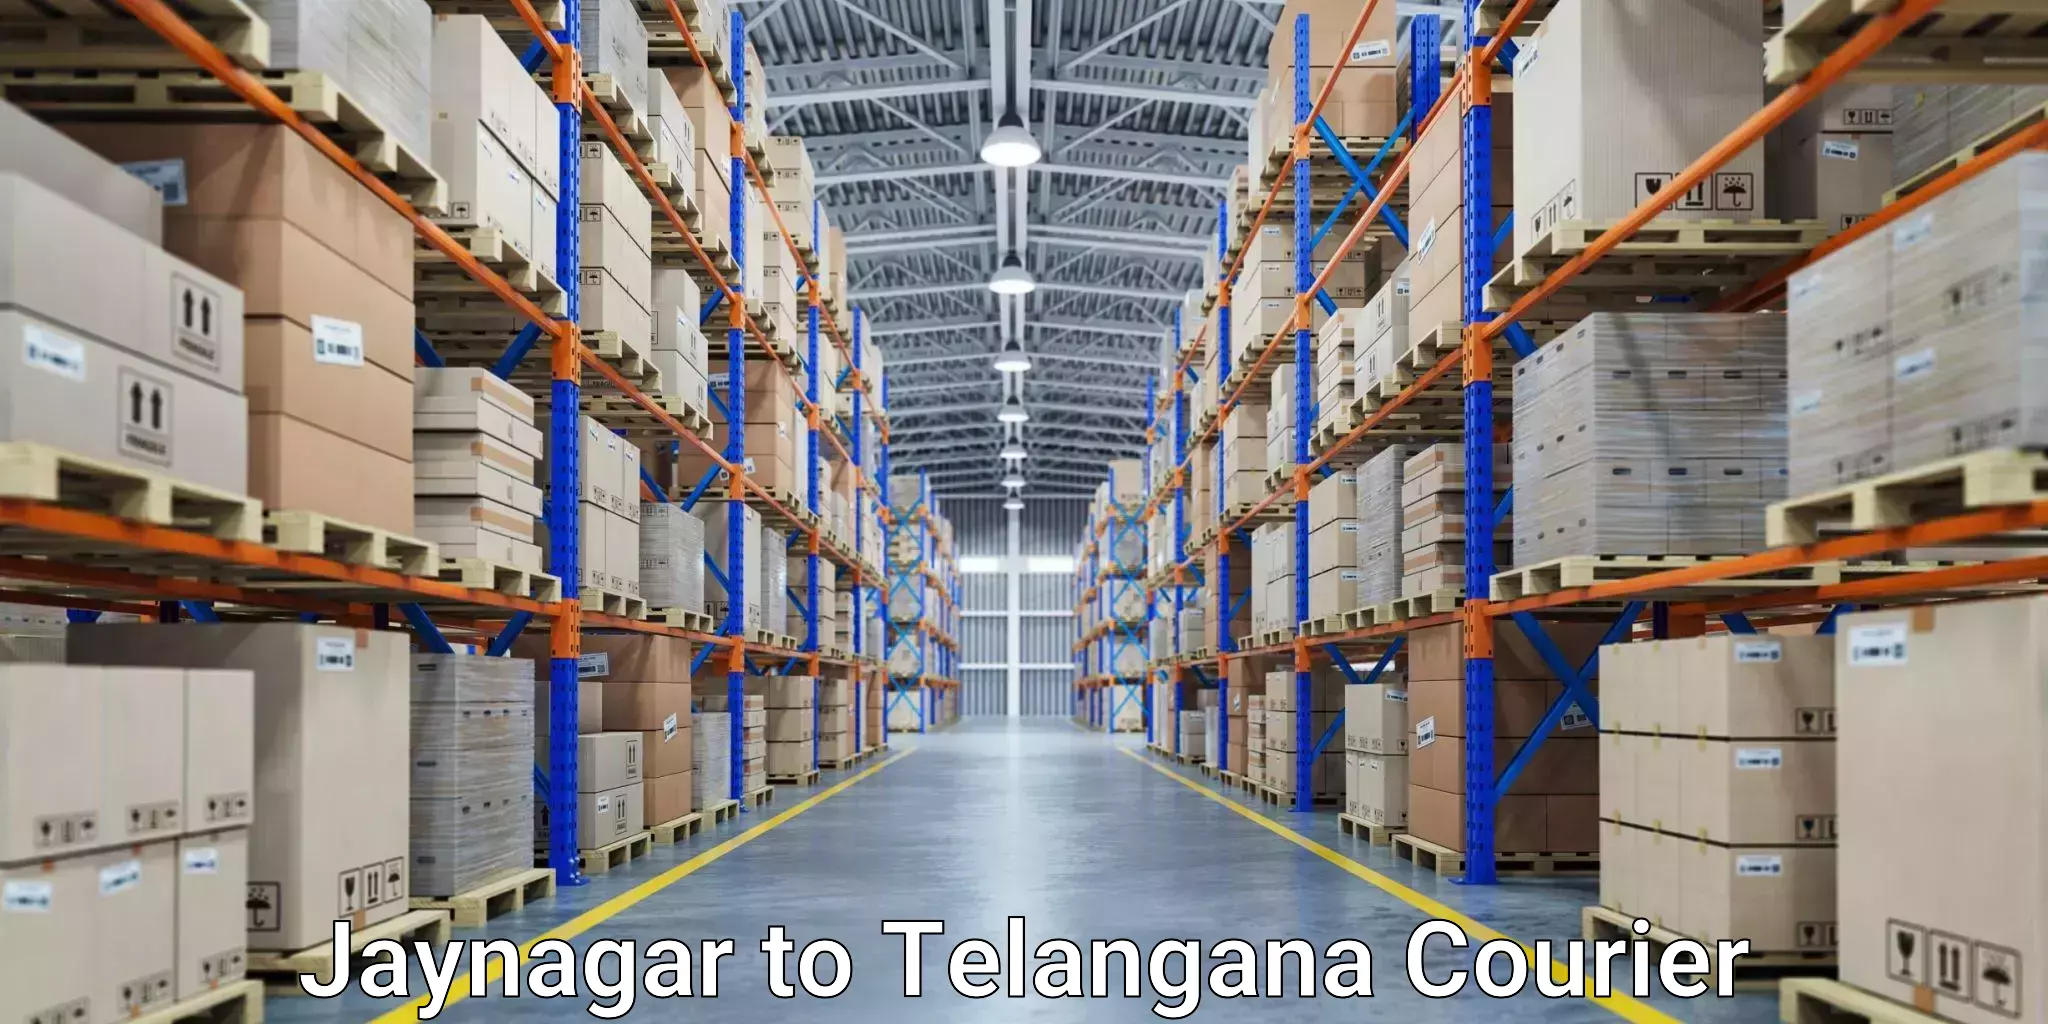 International logistics solutions Jaynagar to Secunderabad